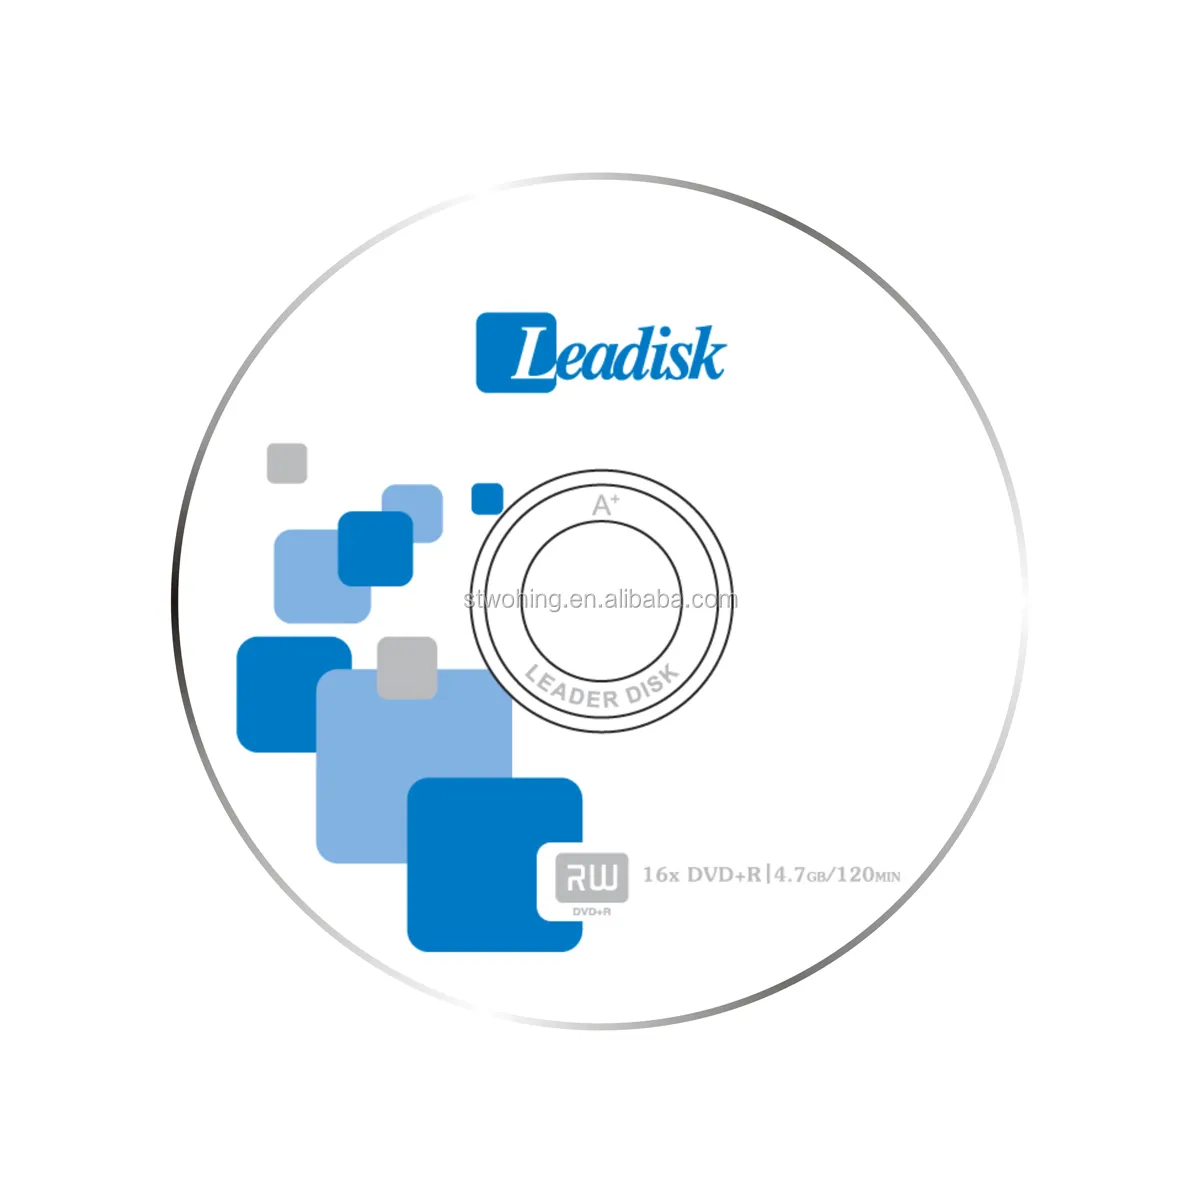 Leadisk trống dvd-r/blank dvdr/bán buôn/blank dvd 50 cái trục chính/thu nhỏ bọc với rõ ràng wheel